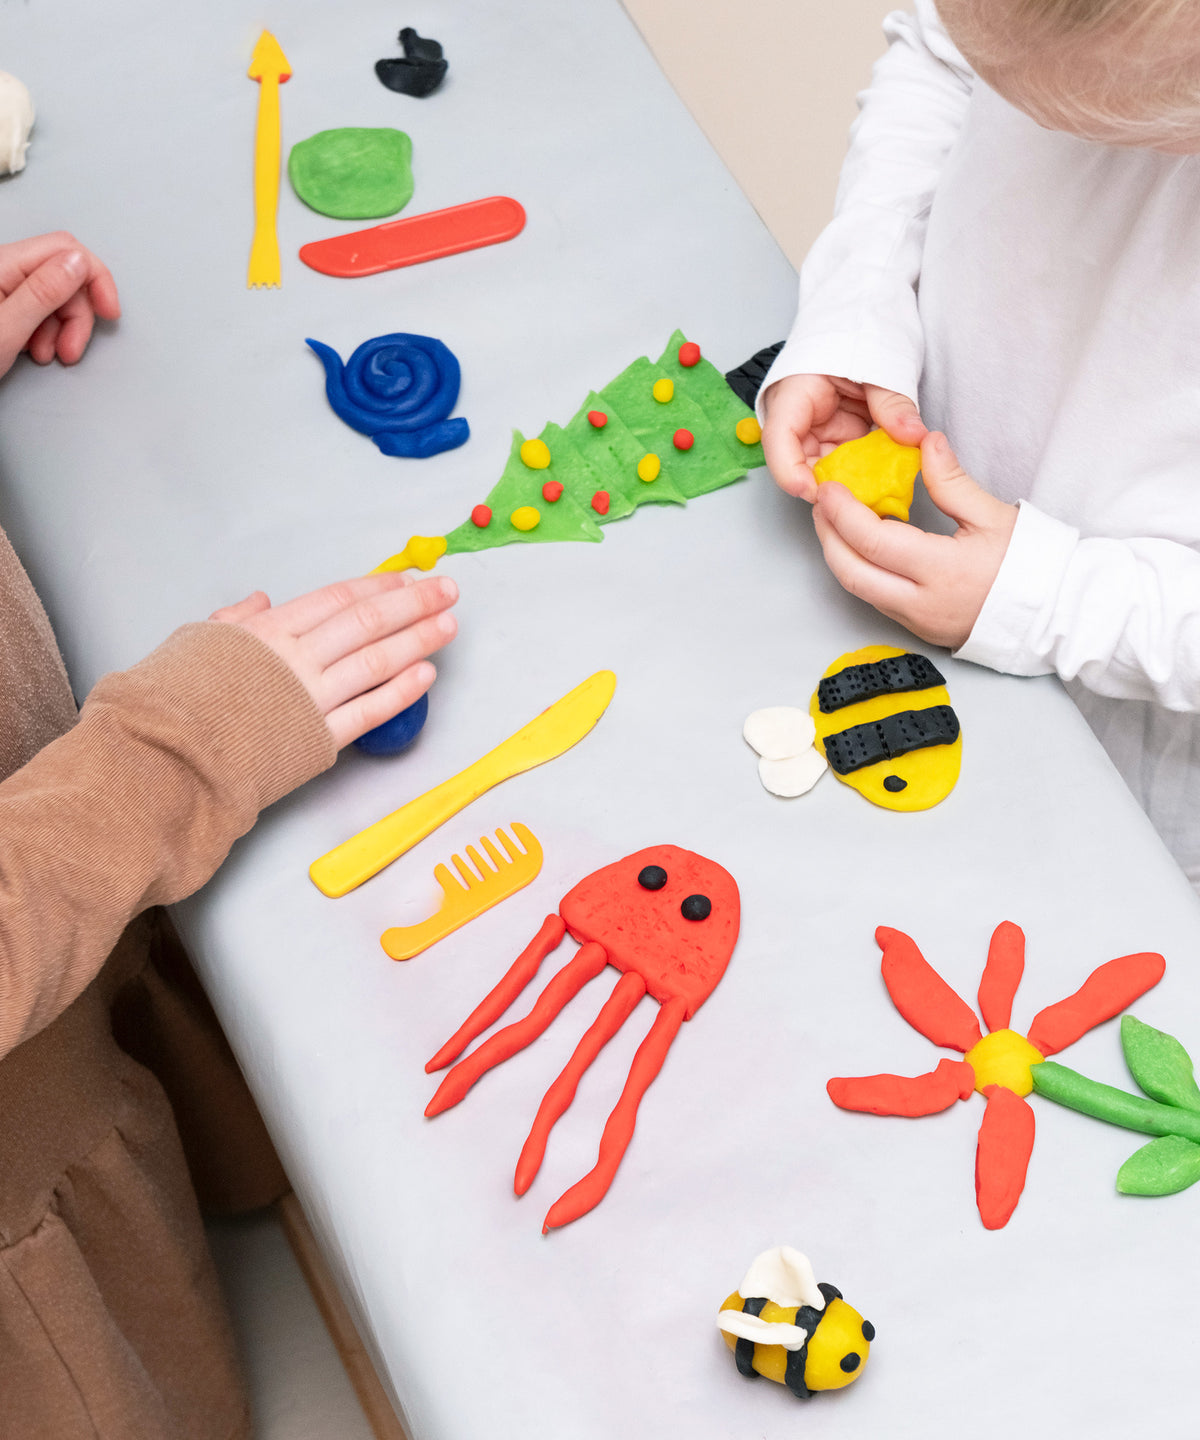 Zwei Kinder spielen mit Knete, verschiedene Figuren liegen auf dem Tisch, z. B. ein Tannenbaum und eine Qualle.